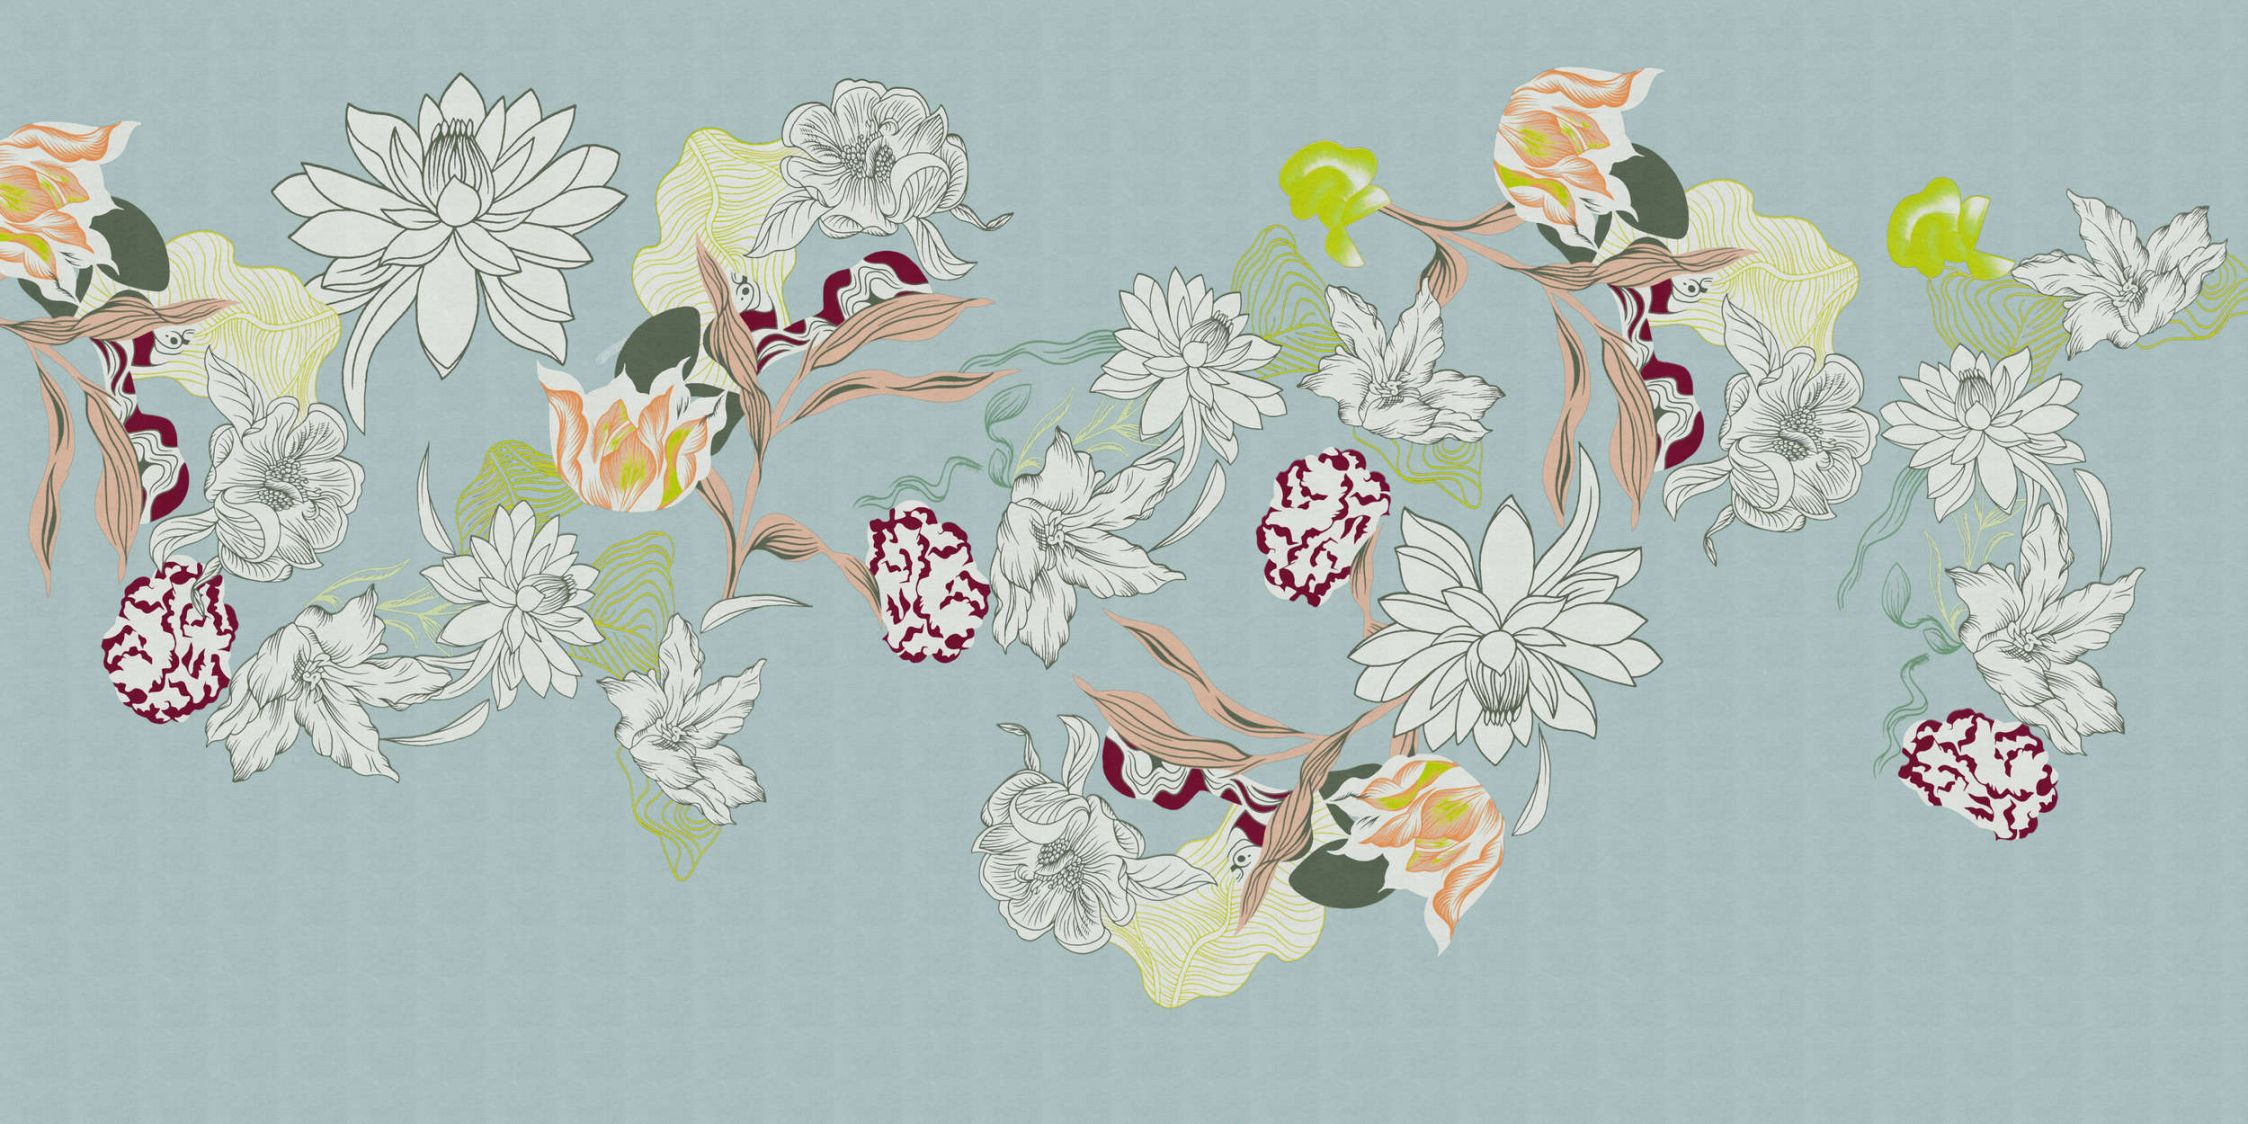             Fotobehang »botany 2« - Abstracte bloemmotieven met groene accenten tegen een subtiele linnen textuur - Soepele, licht glanzende premium vliesstof
        